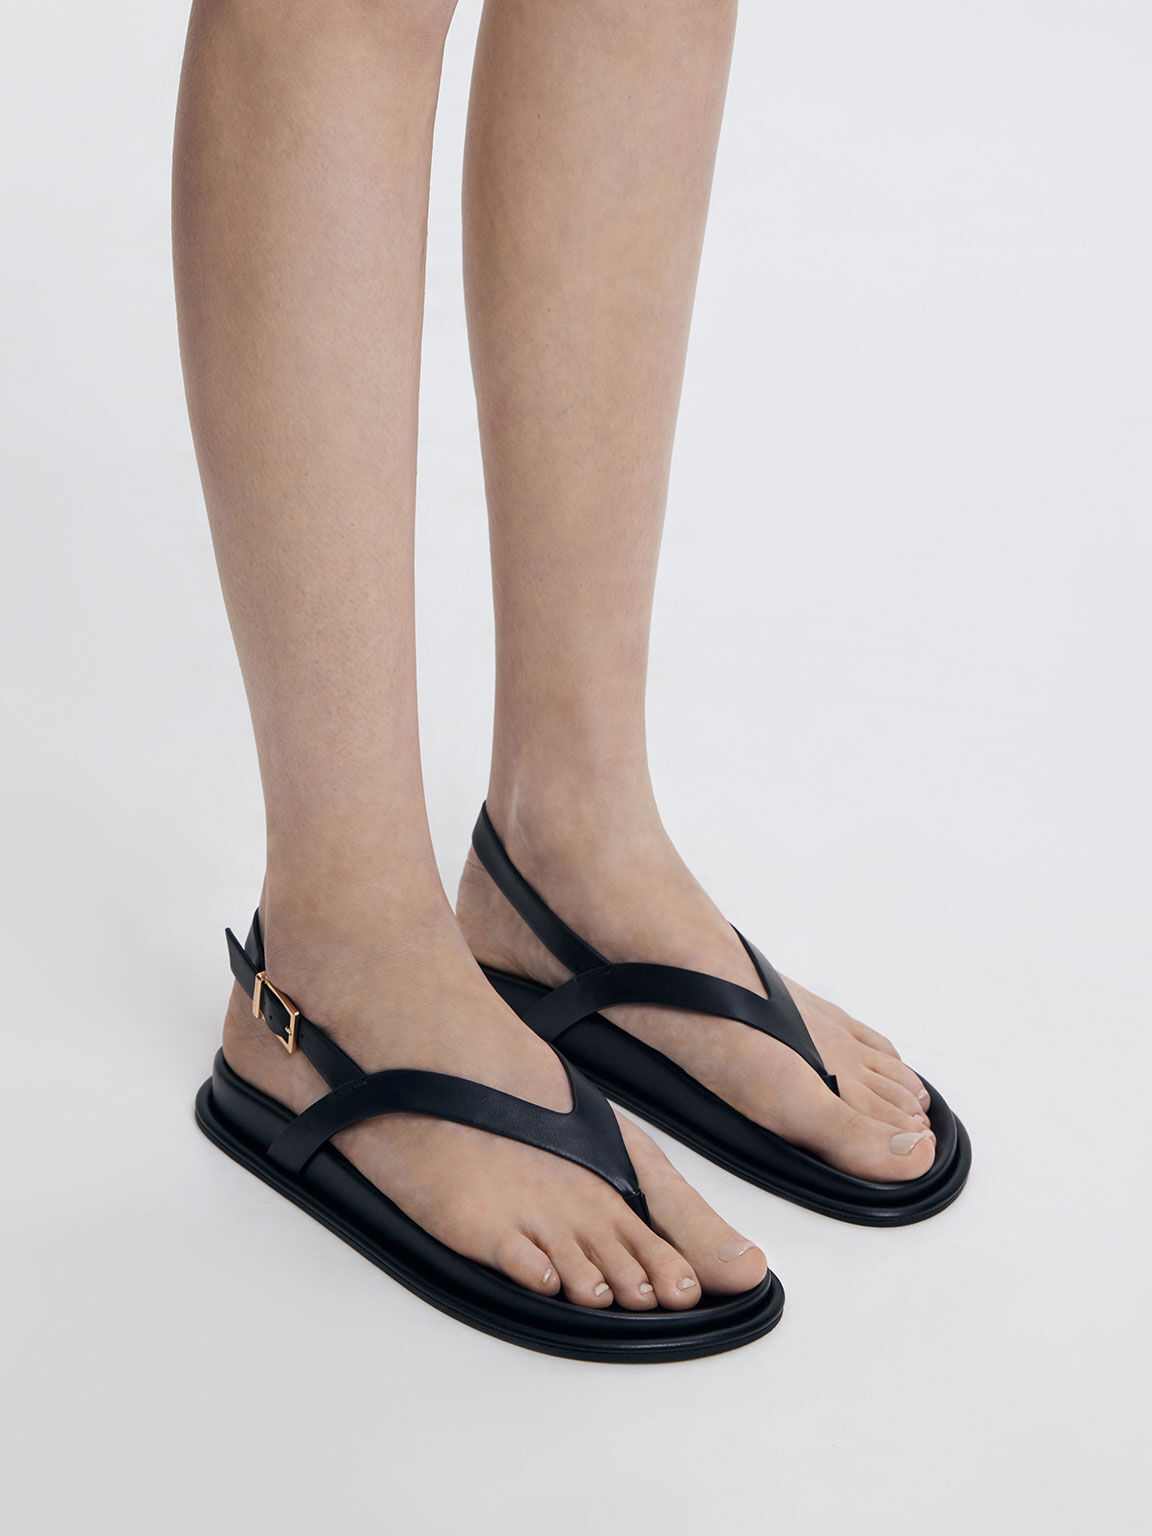 Women's Leather Flip Flops | Southern Tide